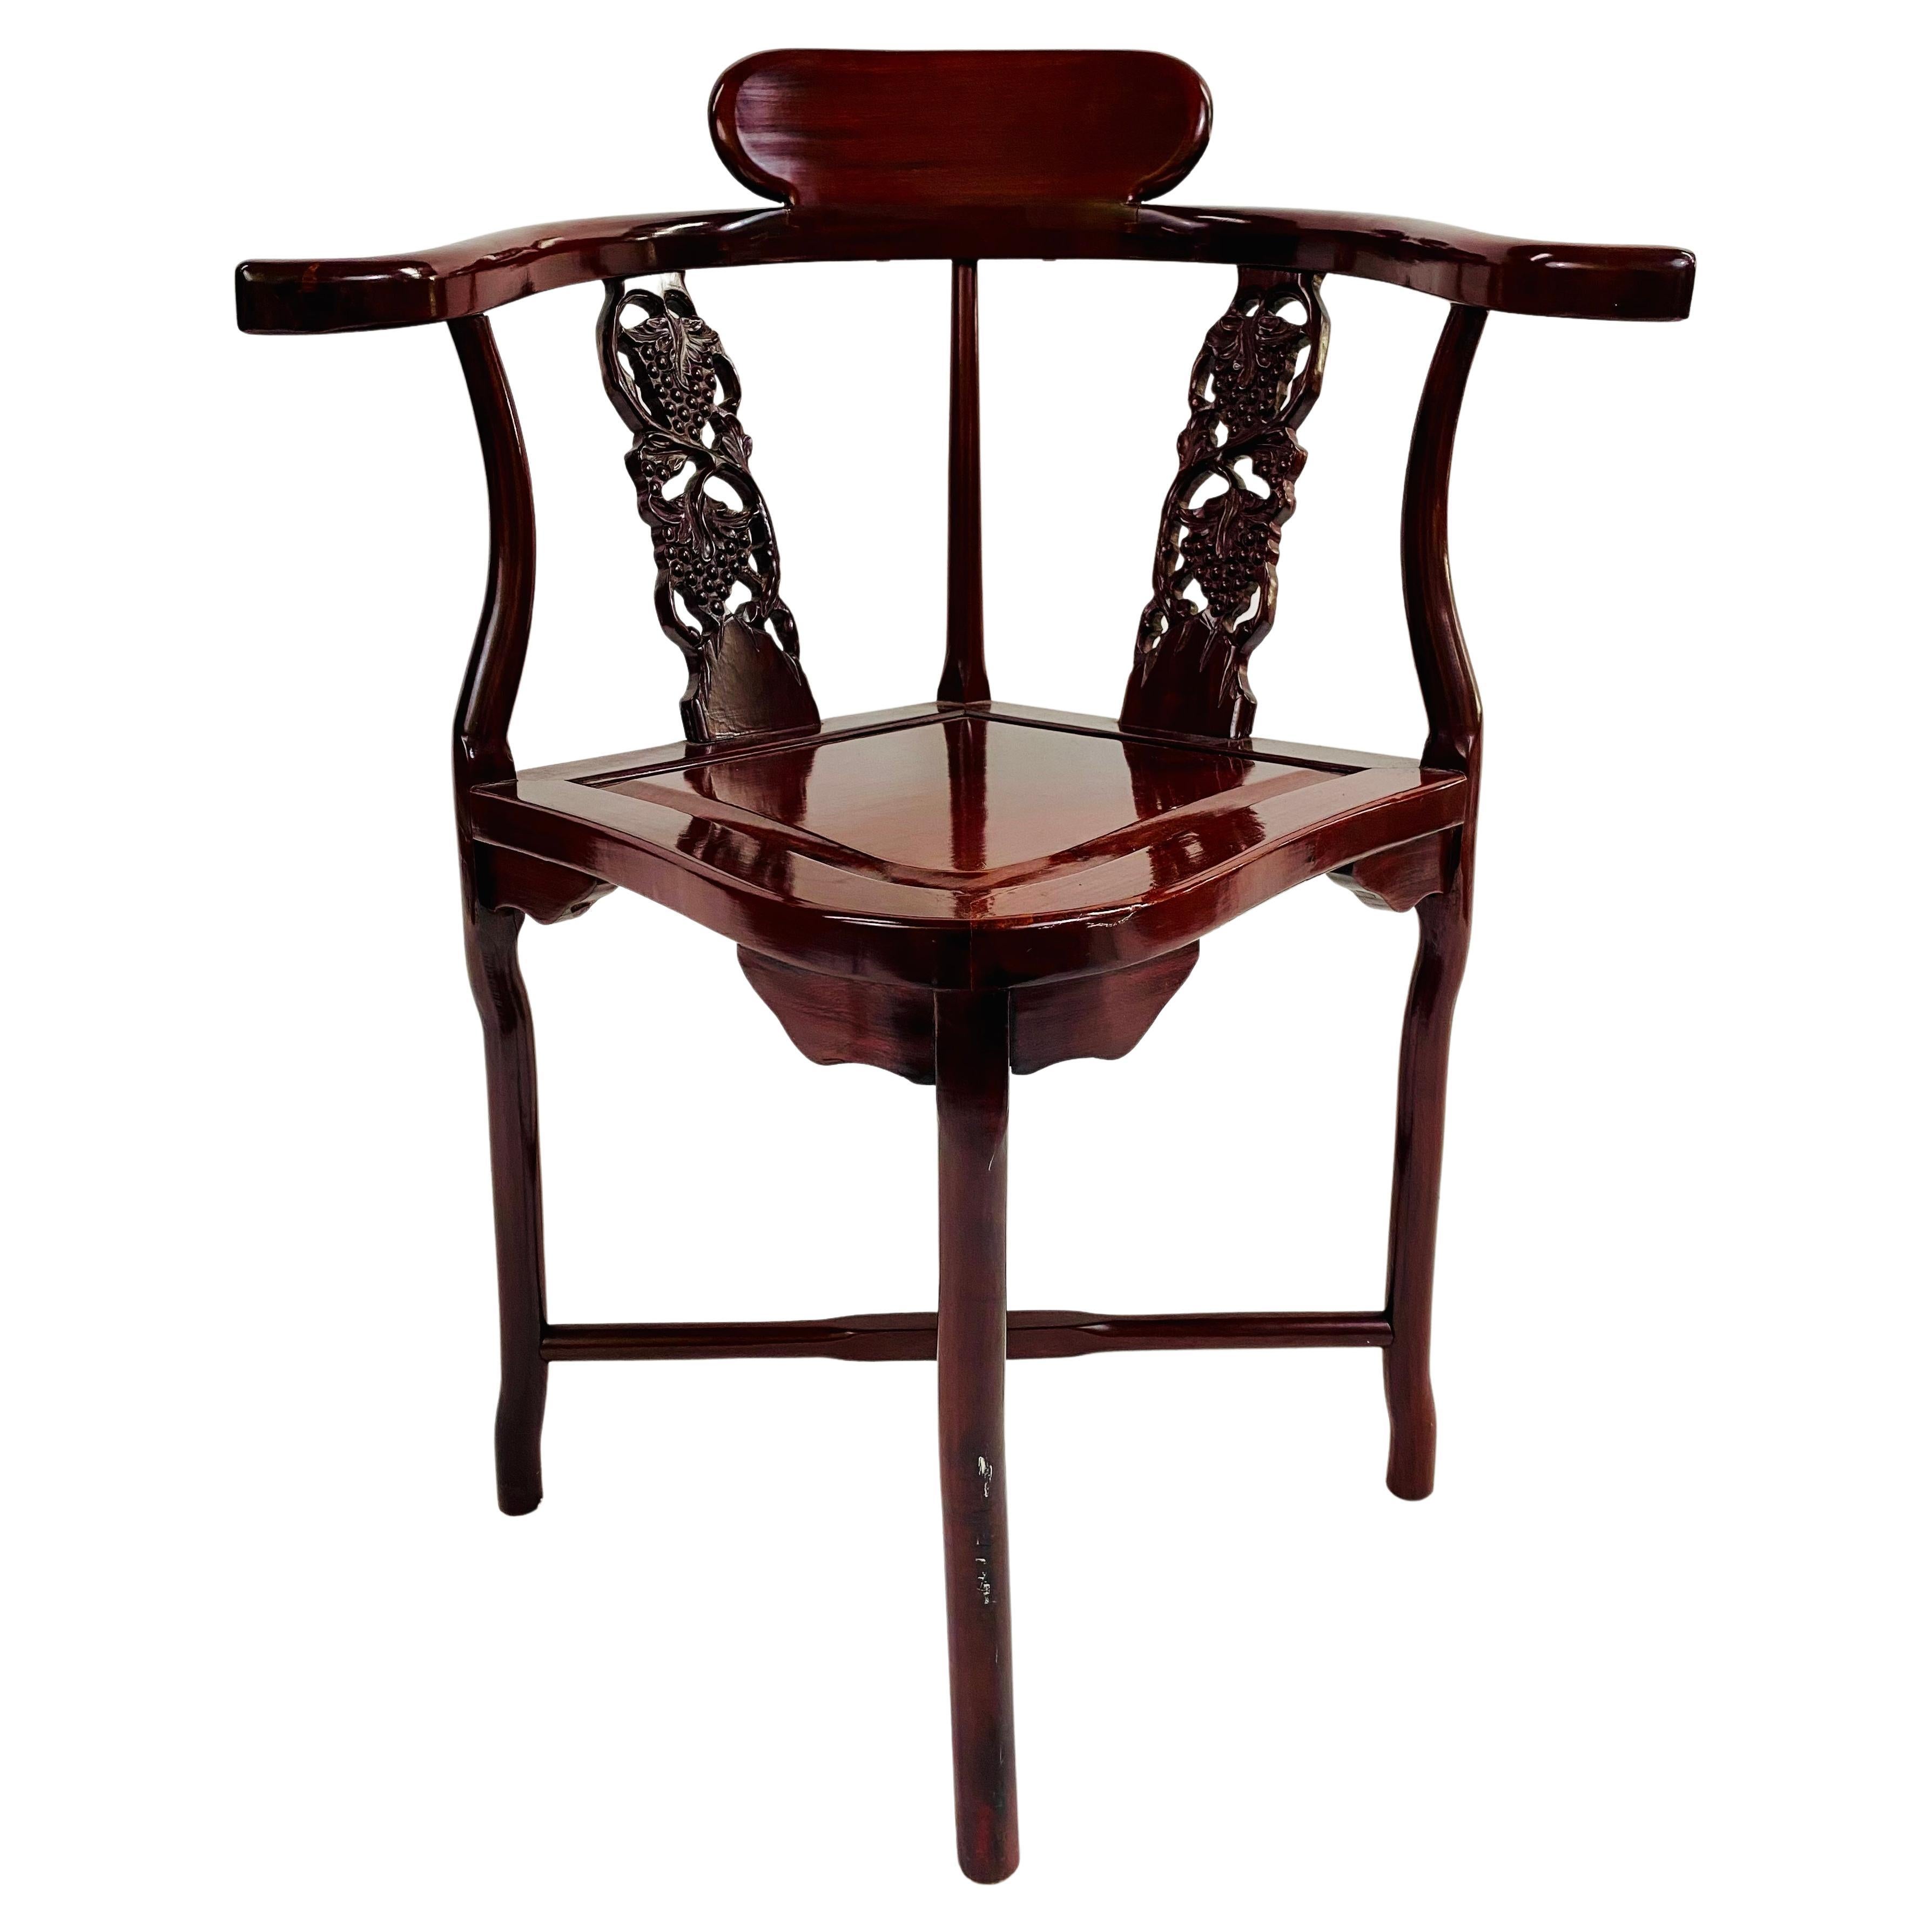 Magnifique chaise d'angle orientale d'exportation chinoise. La chaise est finement sculptée à la main dans un bois de rose de qualité, avec une finition laquée brillante, et est fabriquée selon la technique de la rainure et de la languette. Le